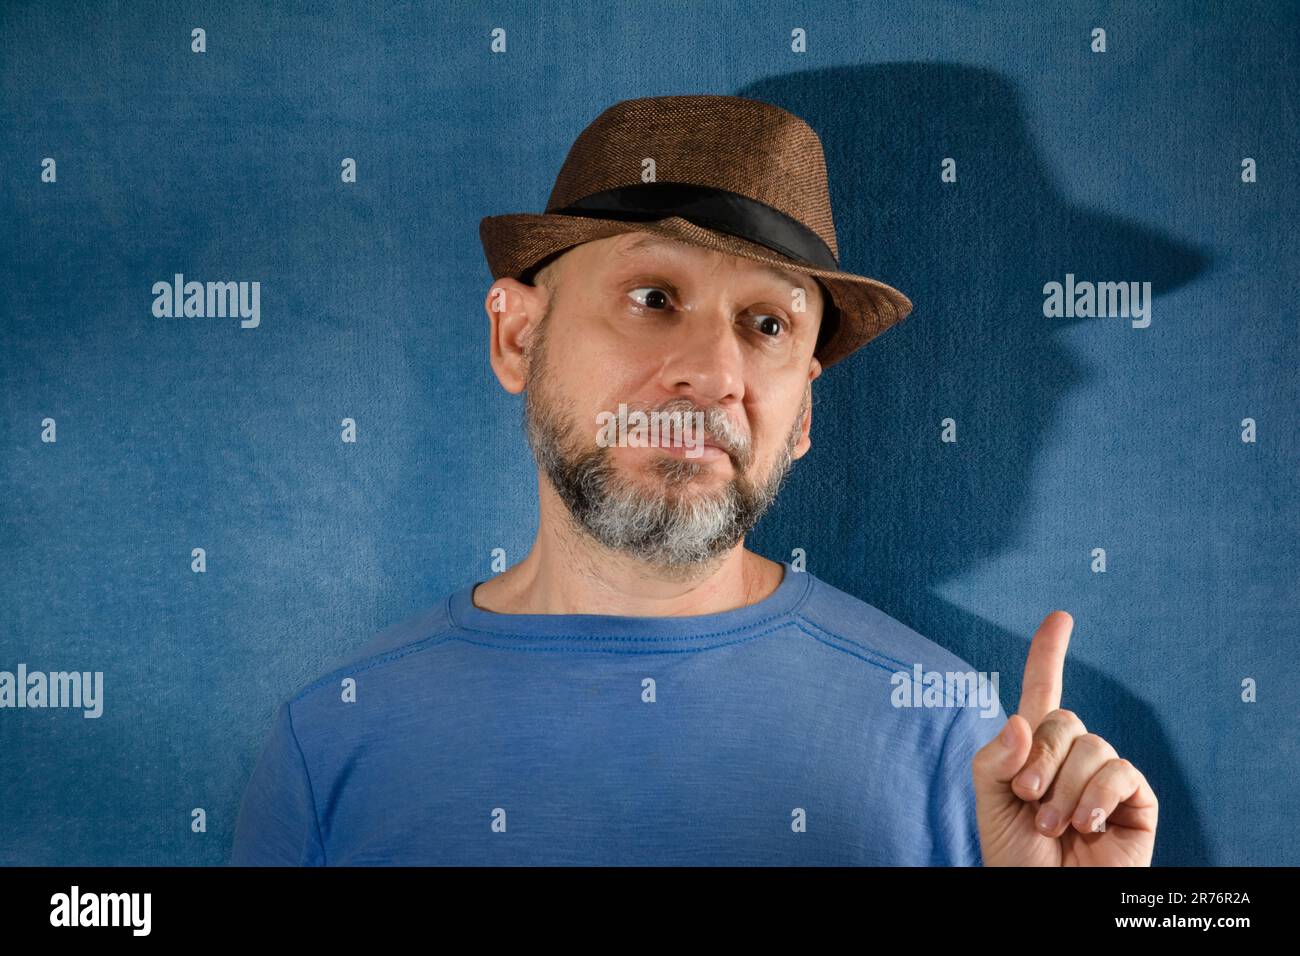 Ein Mann, der einen stilvollen schwarzen Fedora-Hut trägt, während er auf etwas mit einem entschlossenen Ausdruck zeigt Stockfoto